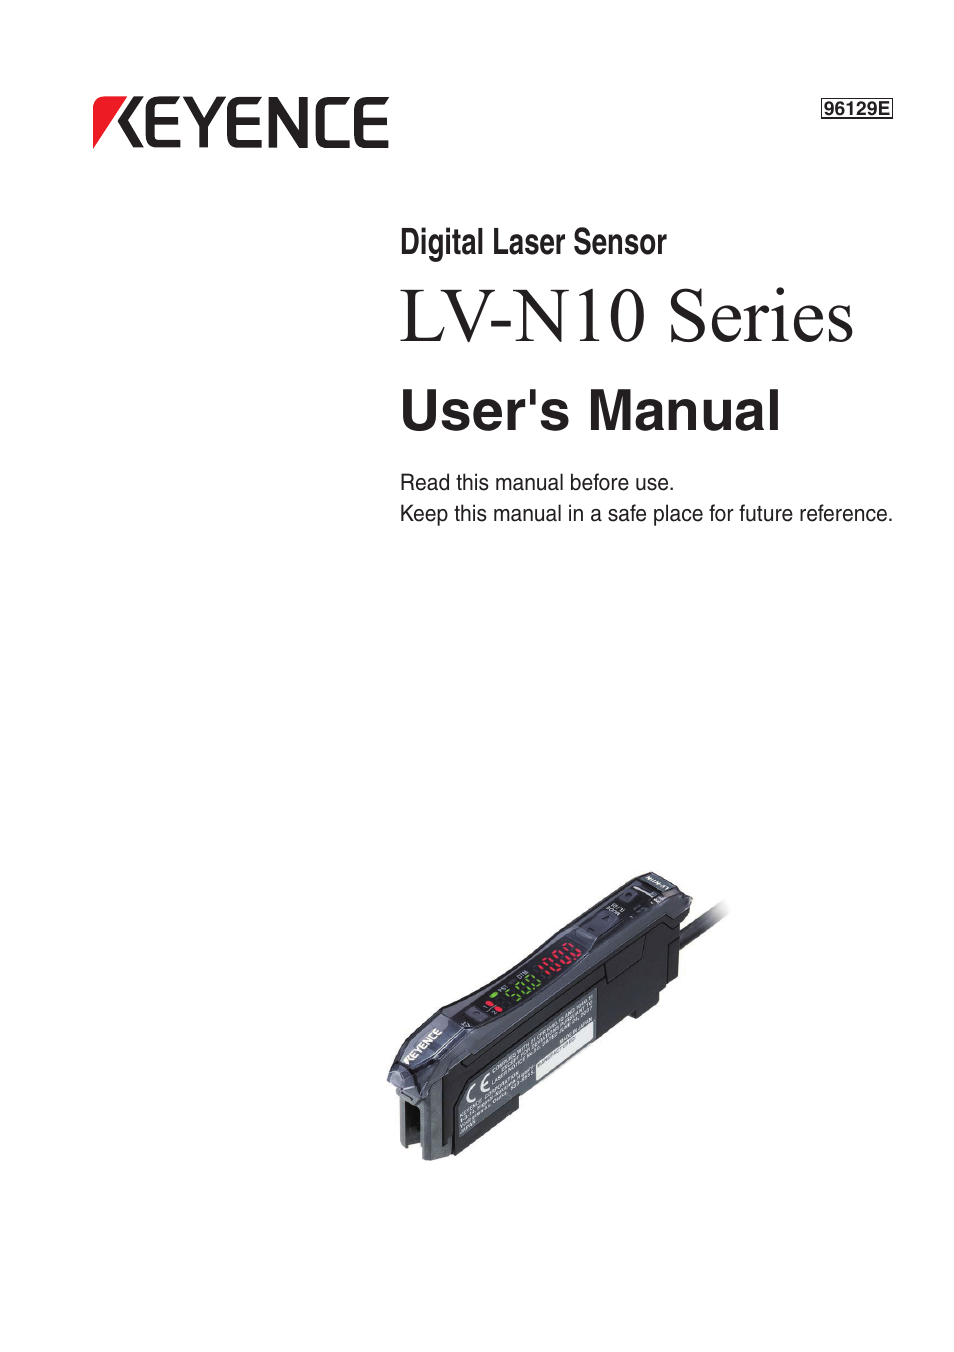 KEYENCE LV-N10 Series User Manual | 112 pages